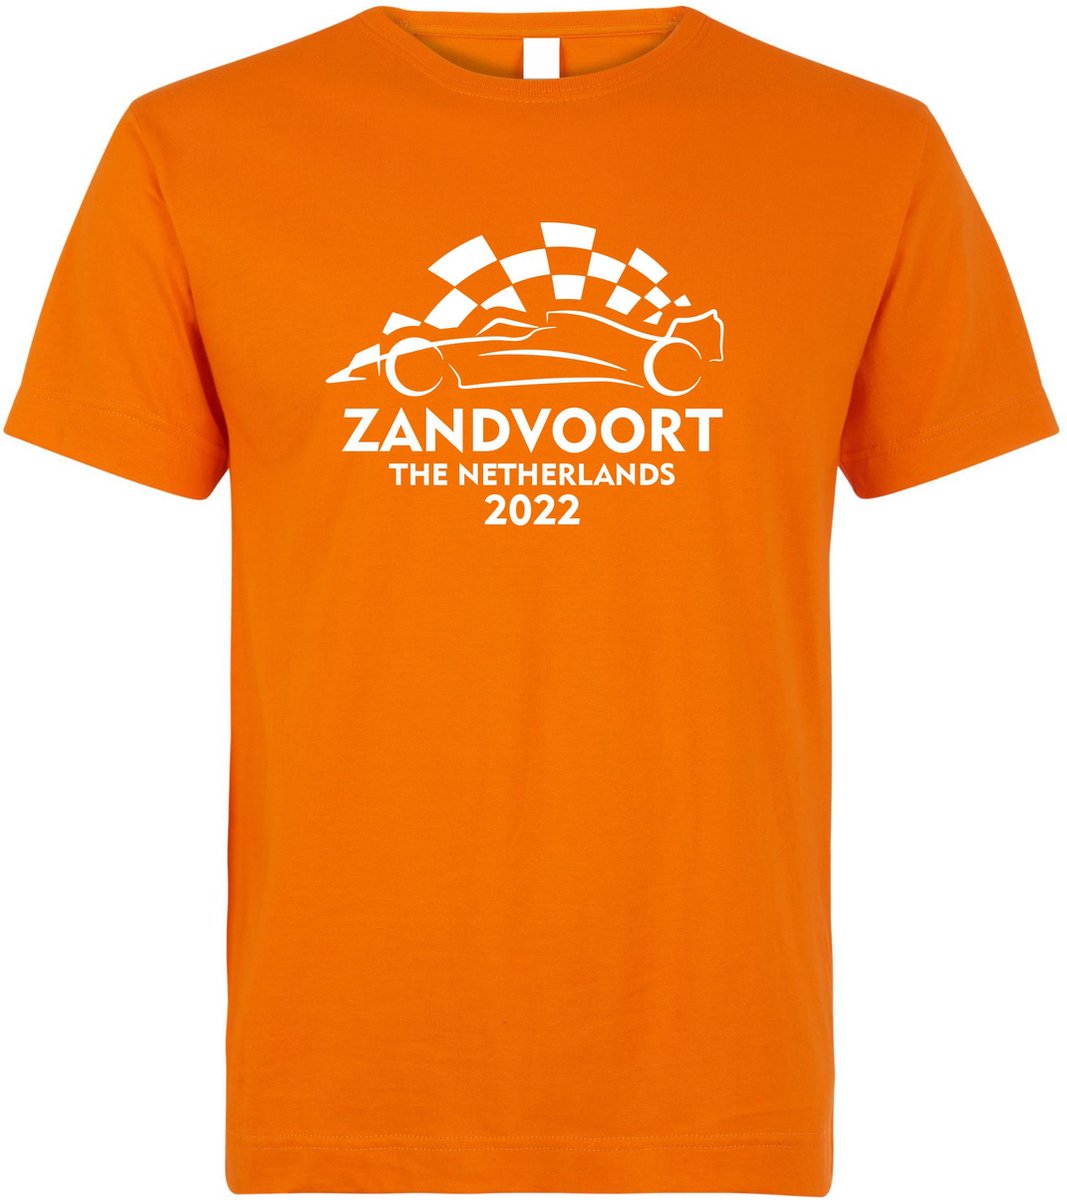 T-shirt Zandvoort The Netherlands 2022 met raceauto | Max Verstappen / Red Bull Racing / Formule 1 fan | Grand Prix Circuit Zandvoort | kleding shirt | Oranje | maat XL